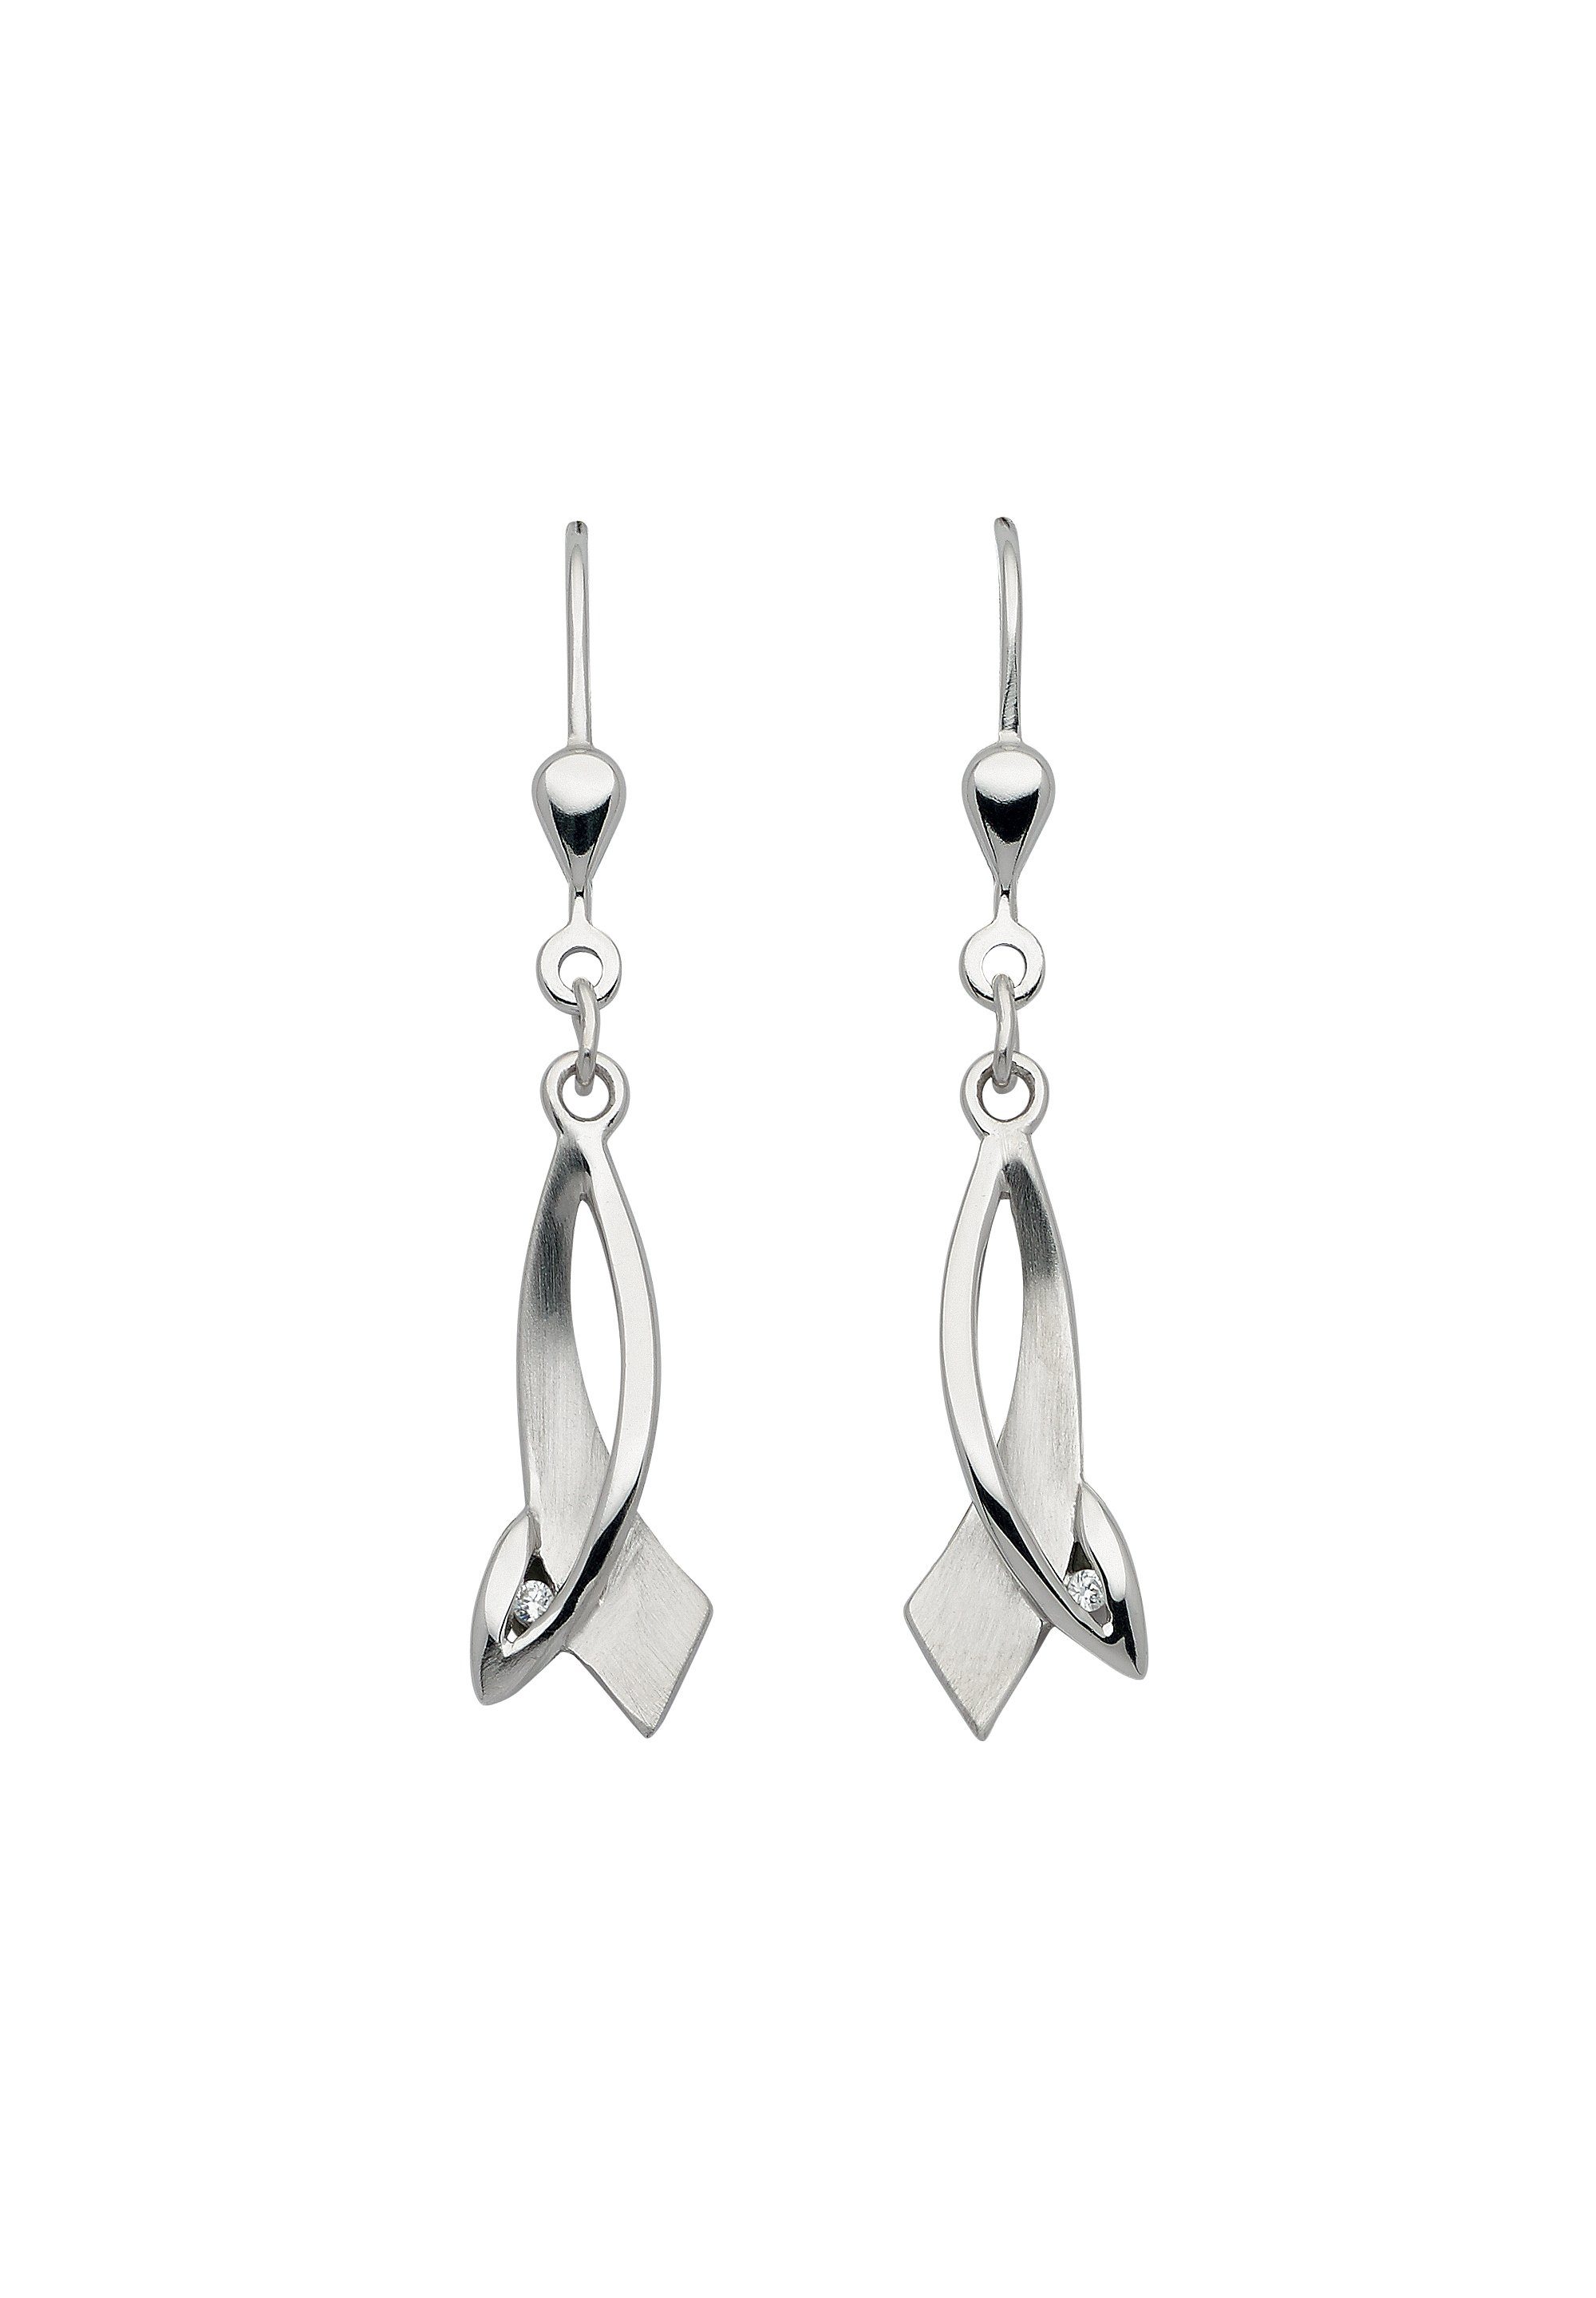 Adelia´s Paar Ohrhänger Damen Silberschmuck, 925 Sterling Silber  Silberschmuck für Damen, Maße - Breite 7,6 mm - Höhe 18,2 mm